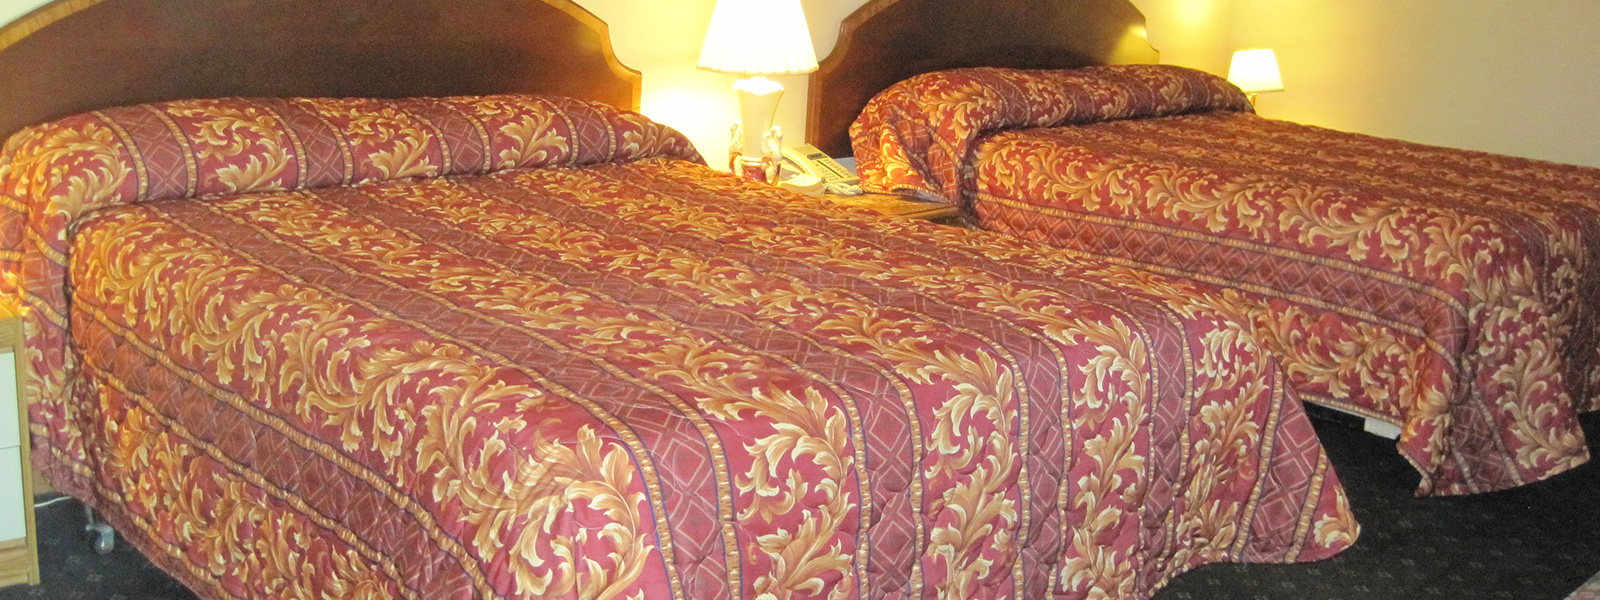 banner-two-queen-beds